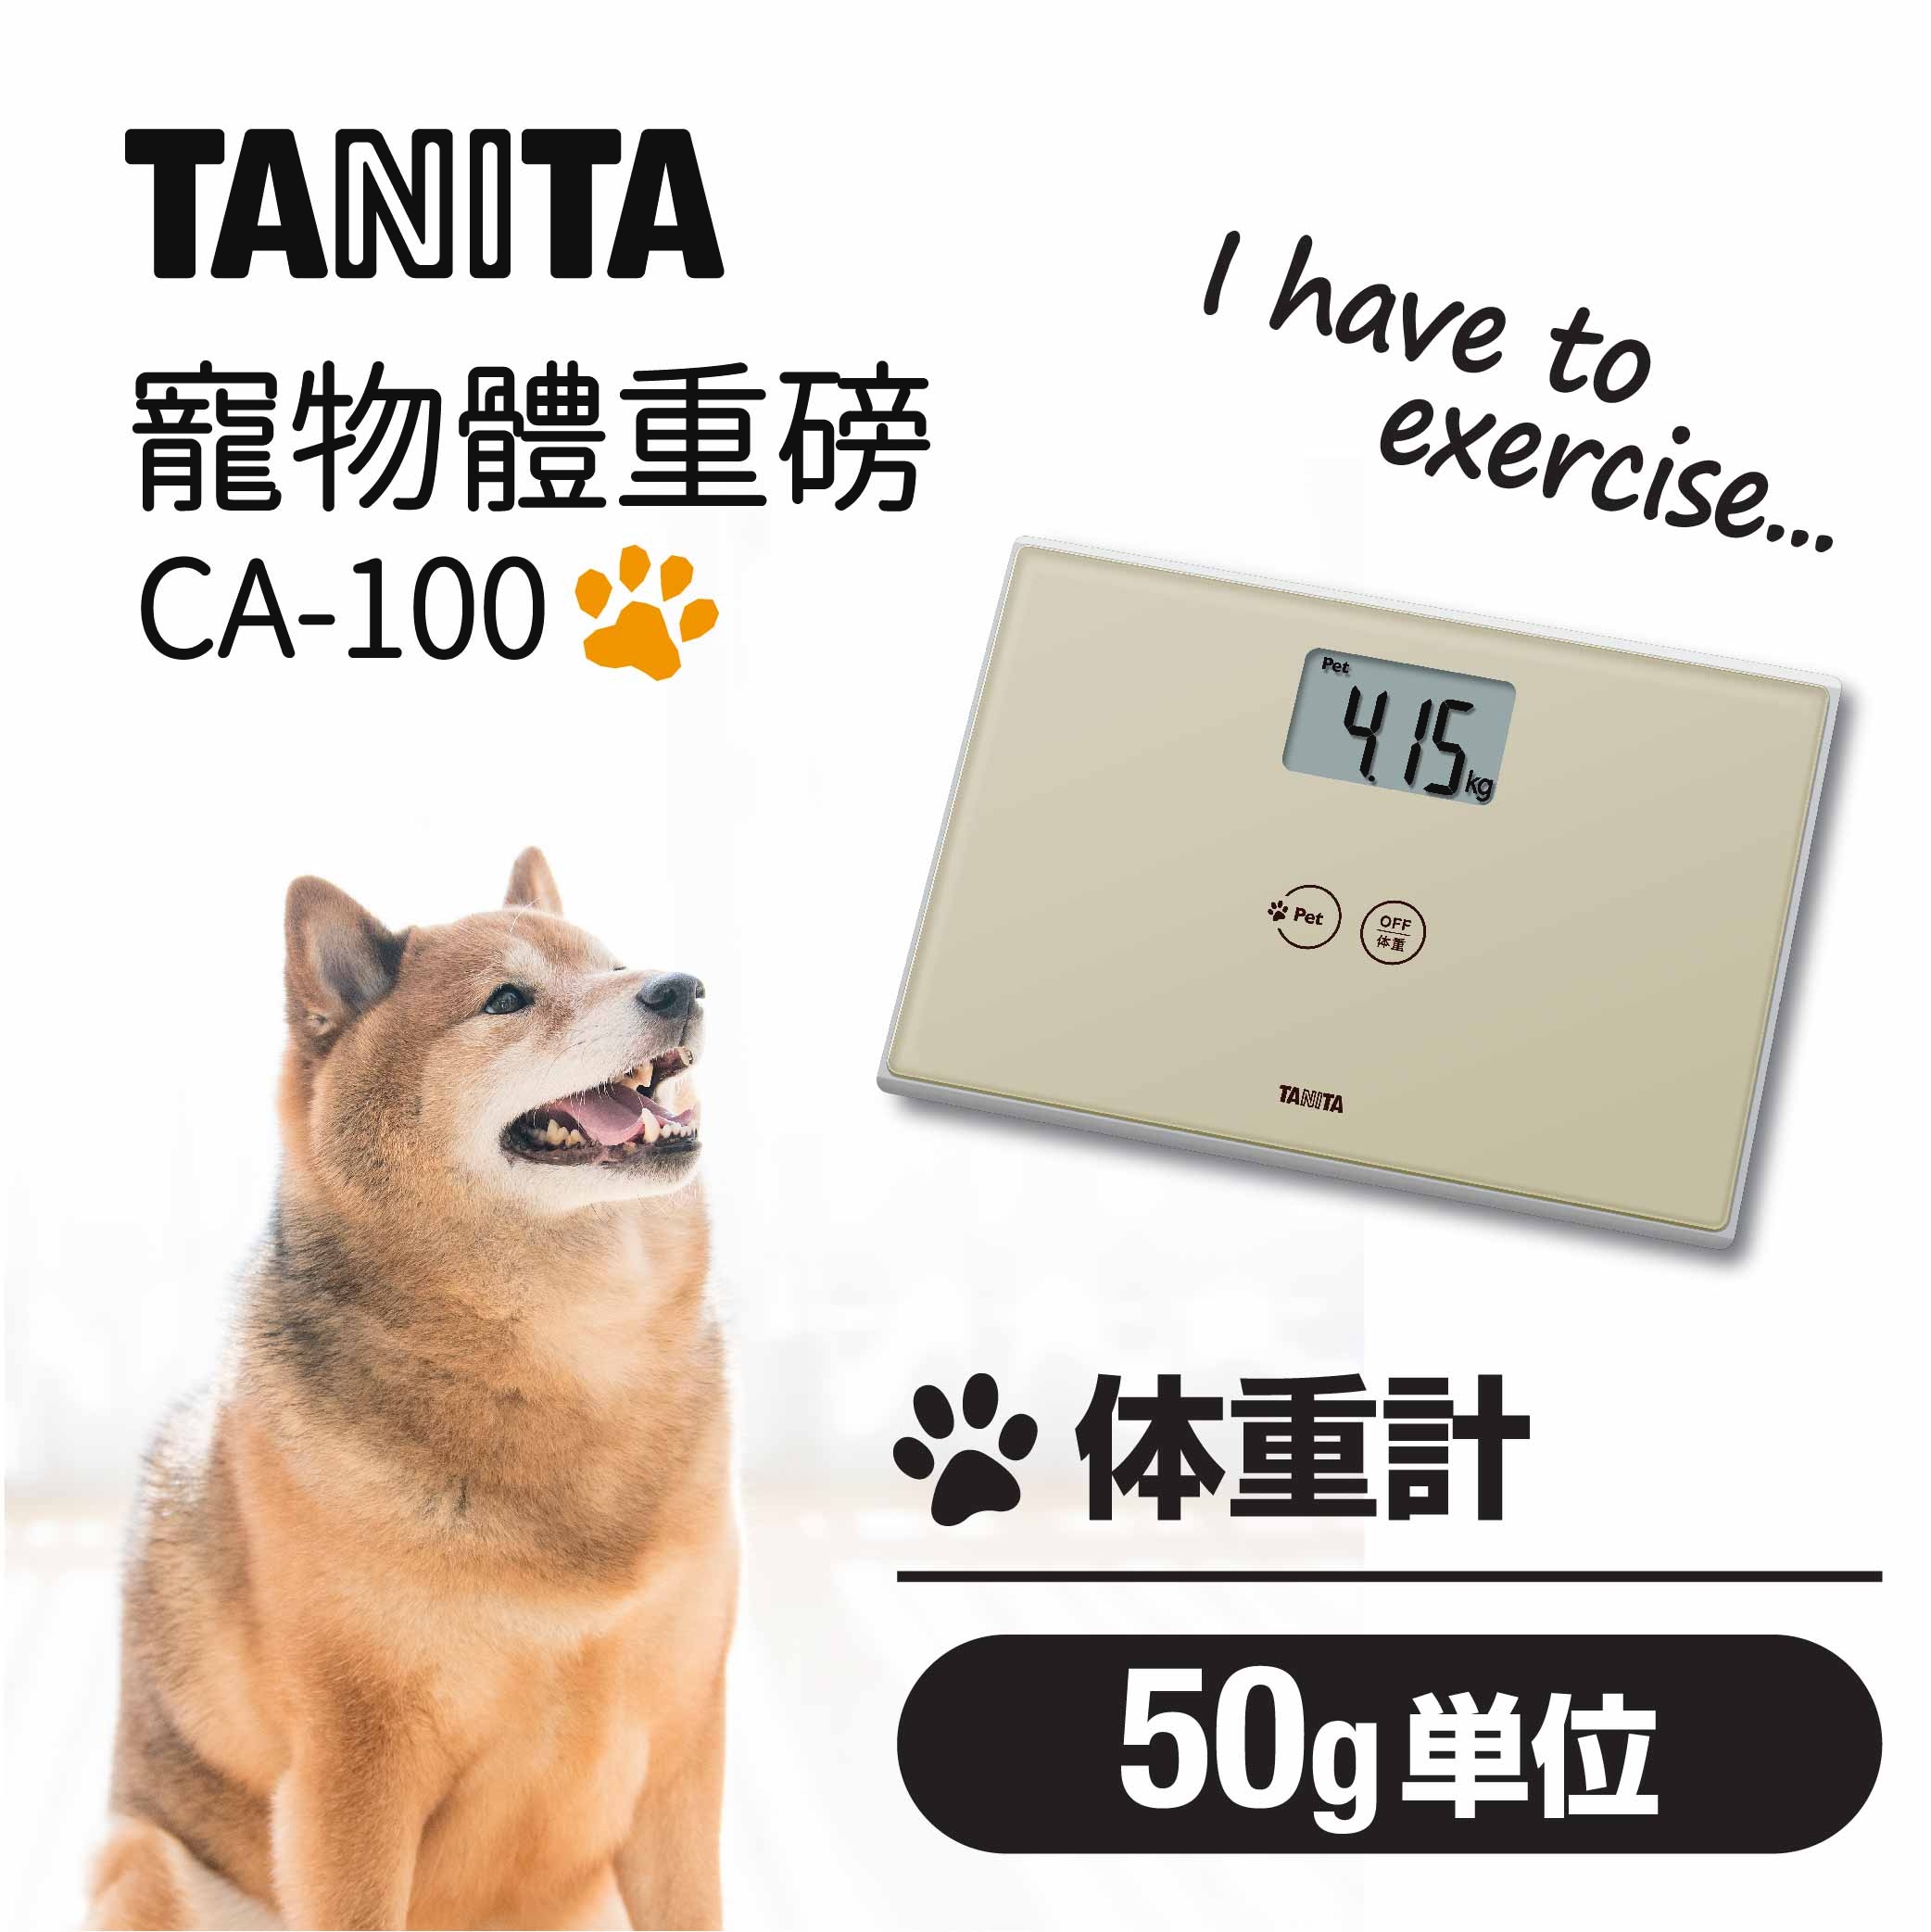 Understanding Tanita Measurements, TANITA Asia Pacific